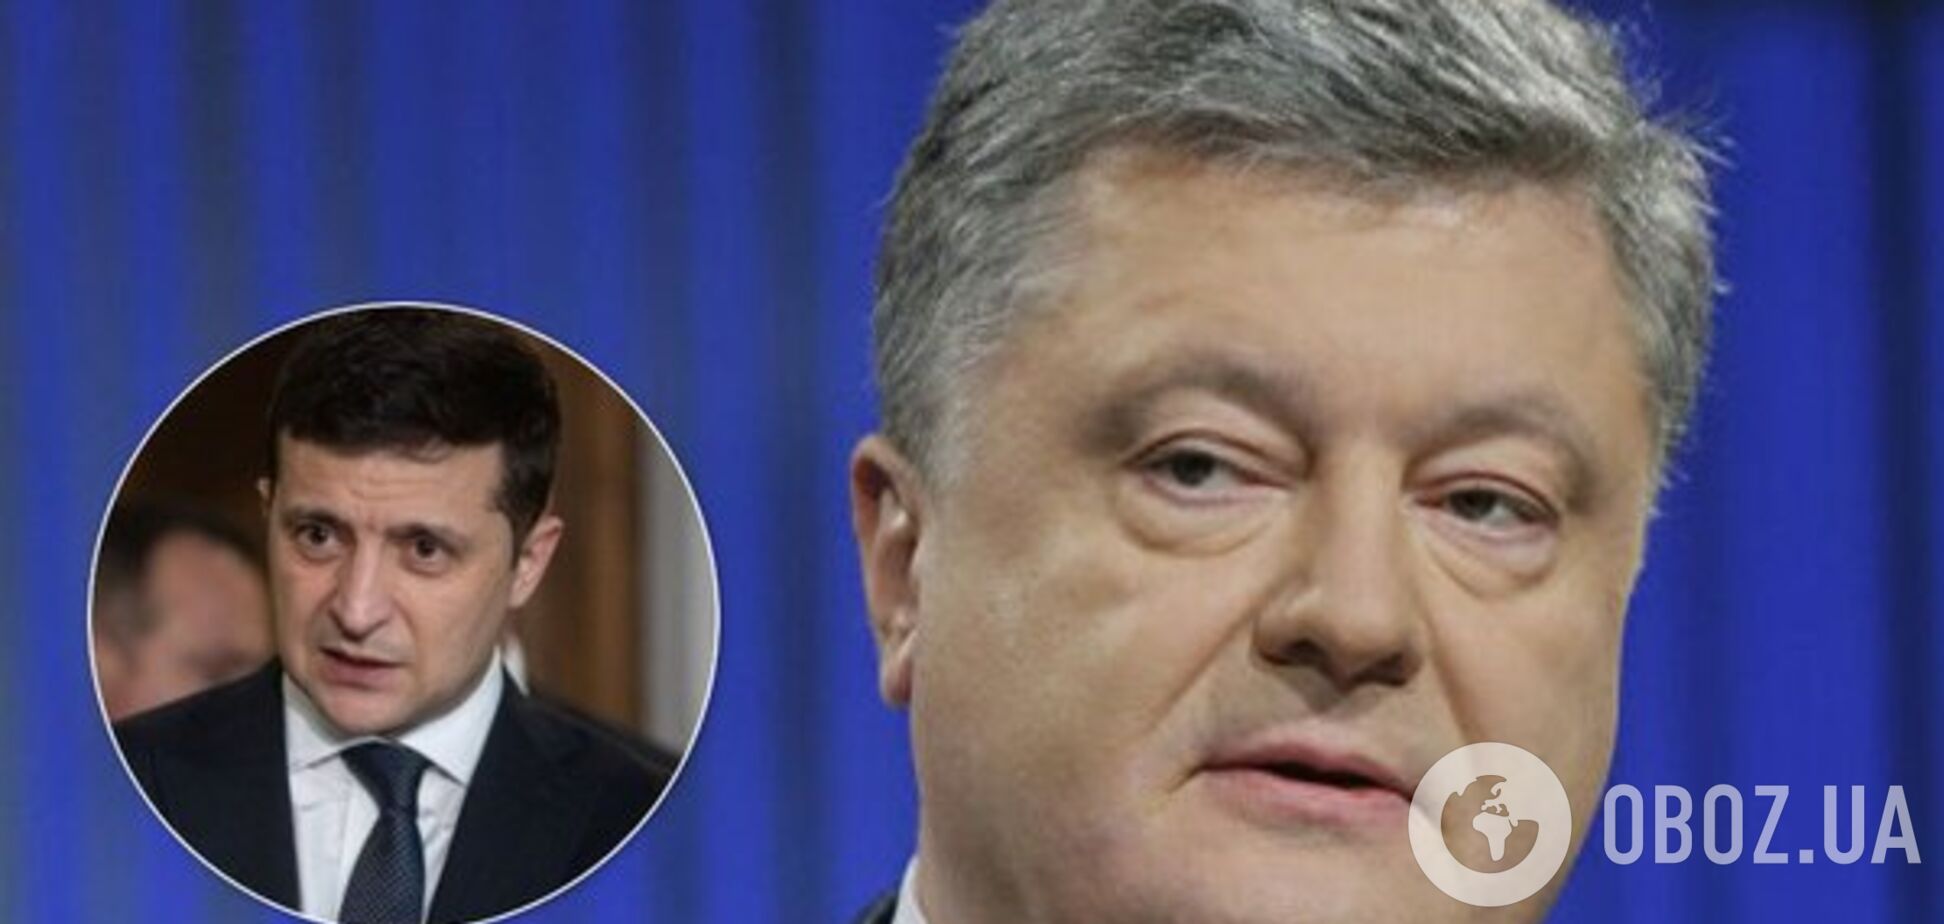 Рейтинг 'ЕС' существенно вырос: партия Порошенко догоняет теряющих позиции 'слуг'